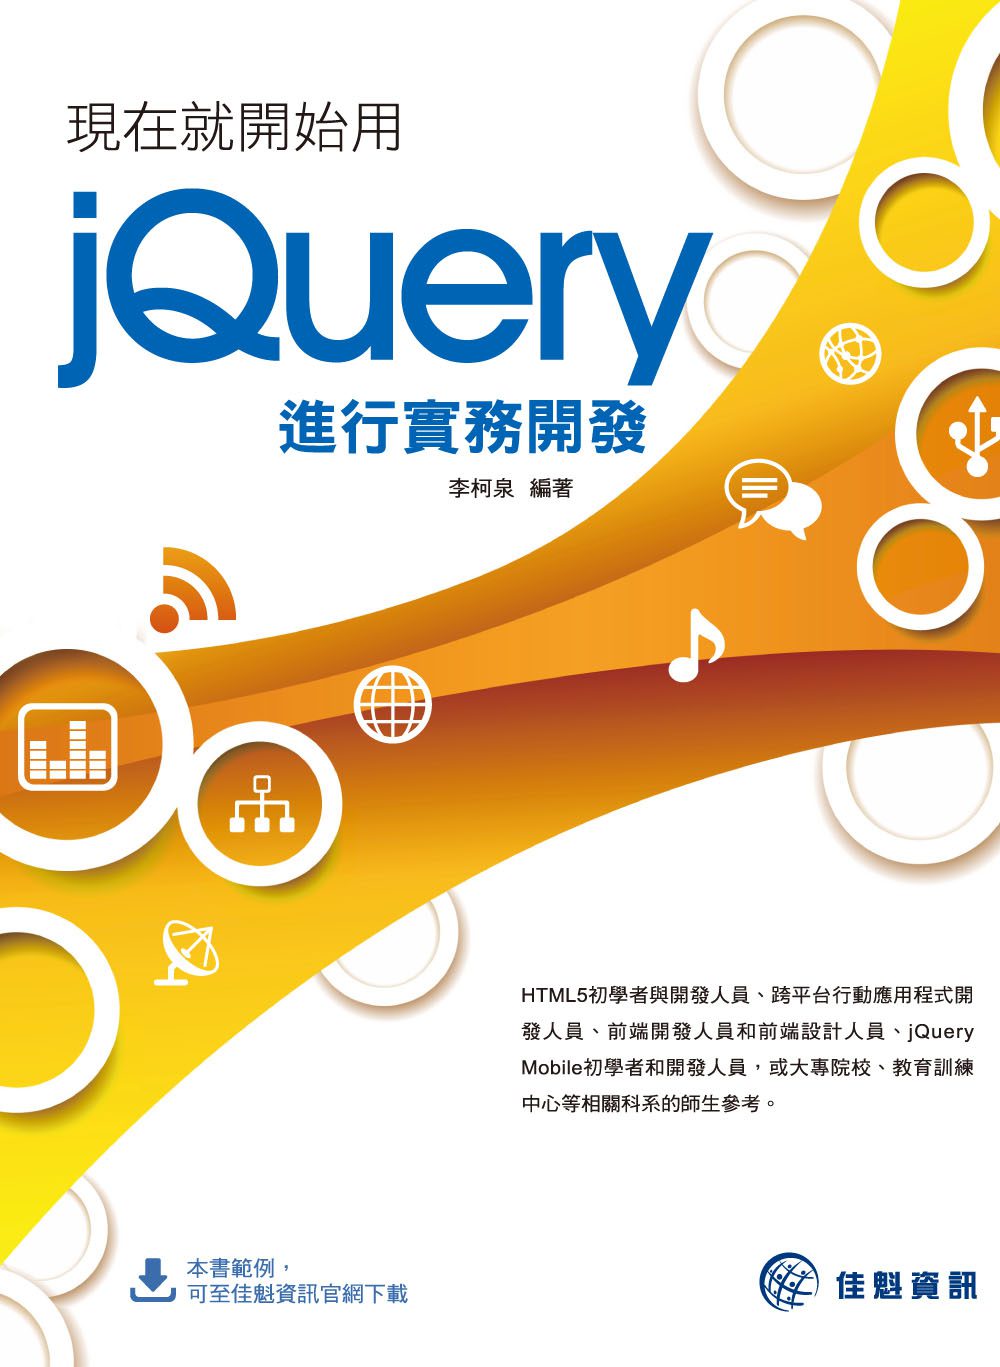 現在就開始用jQuery進行實務開發